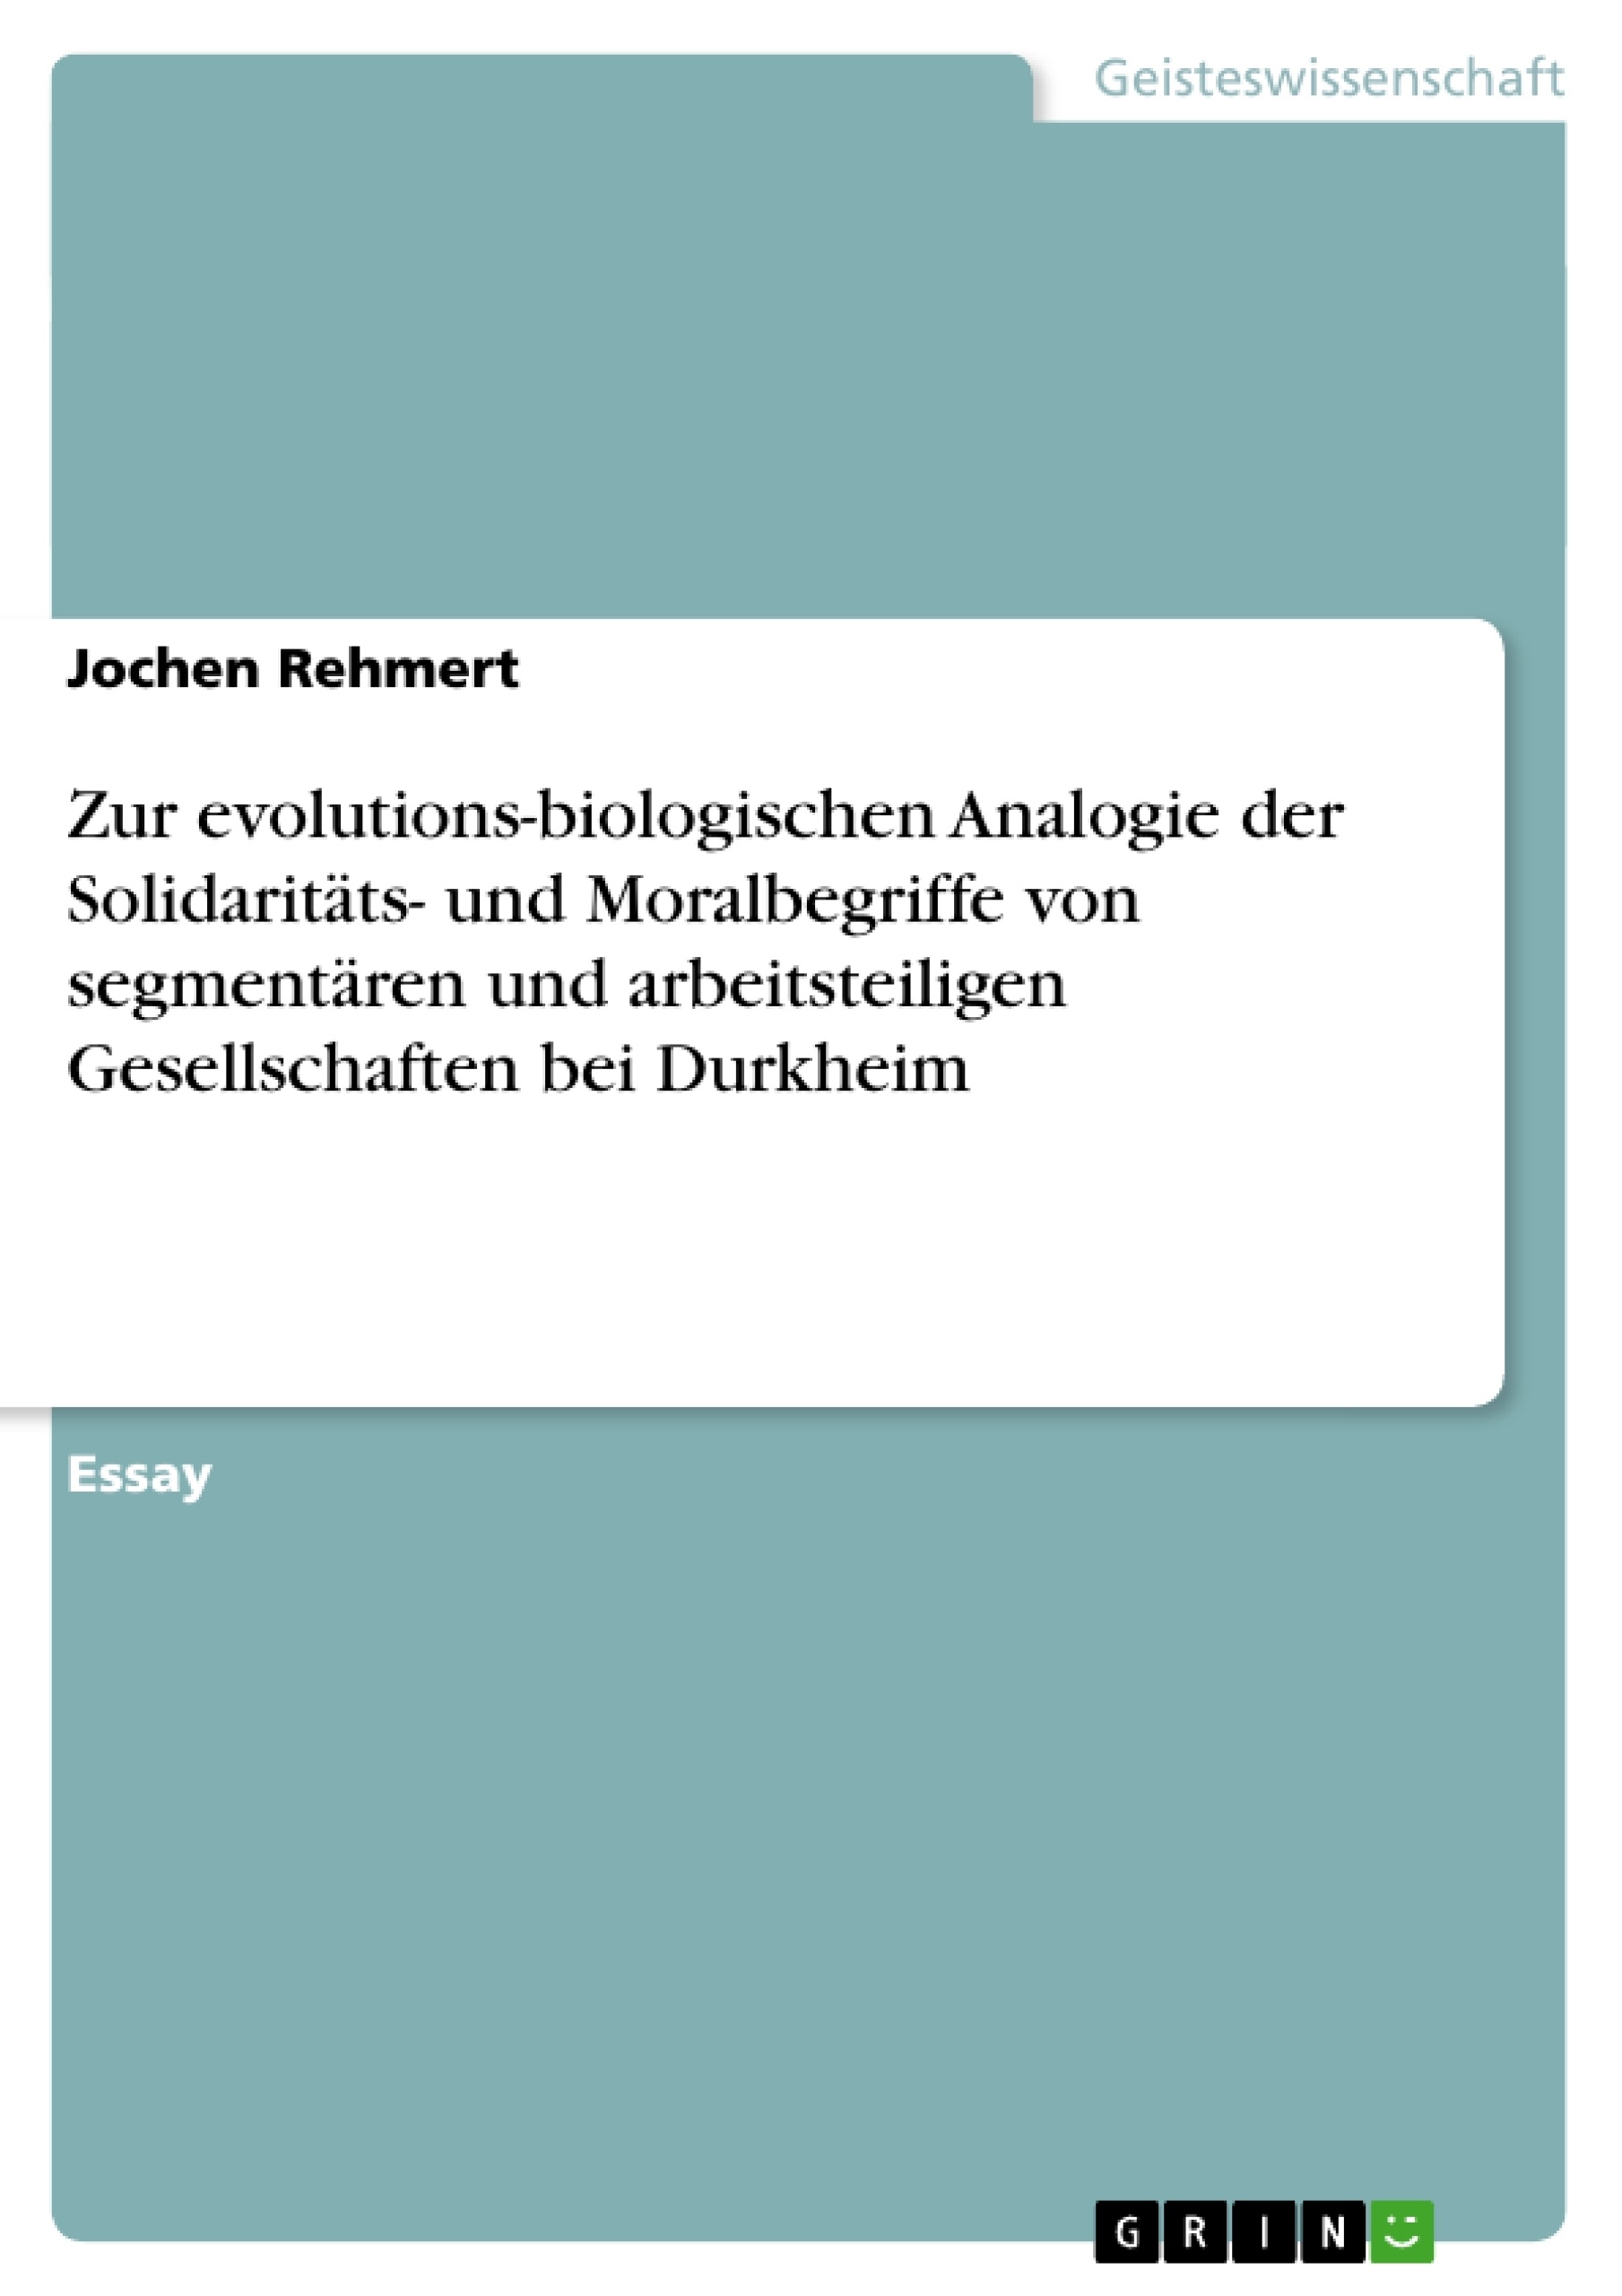 Título: Zur evolutions-biologischen Analogie der Solidaritäts- und Moralbegriffe von segmentären und arbeitsteiligen Gesellschaften bei Durkheim